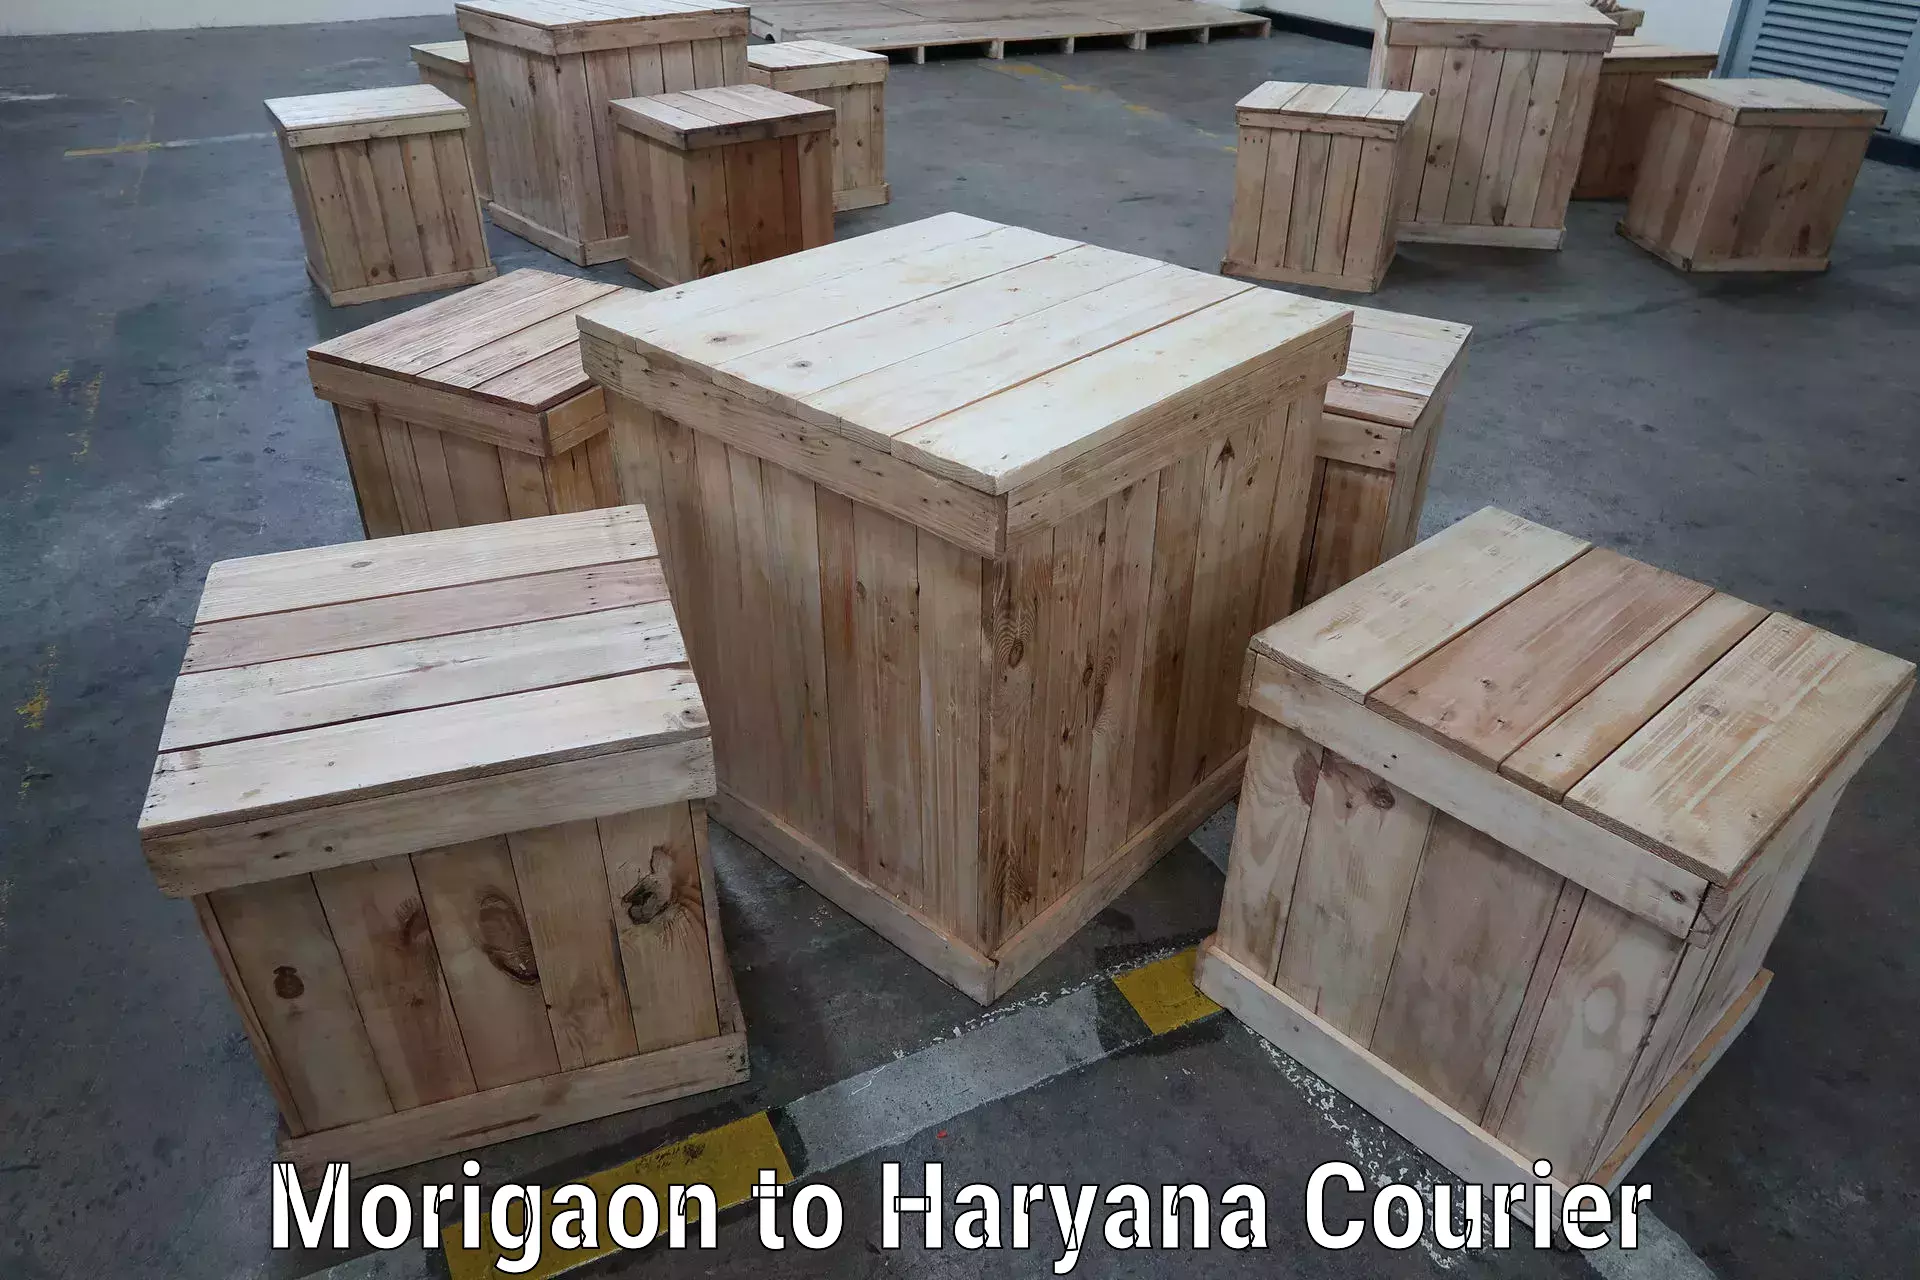 Advanced shipping network Morigaon to Chaudhary Charan Singh Haryana Agricultural University Hisar